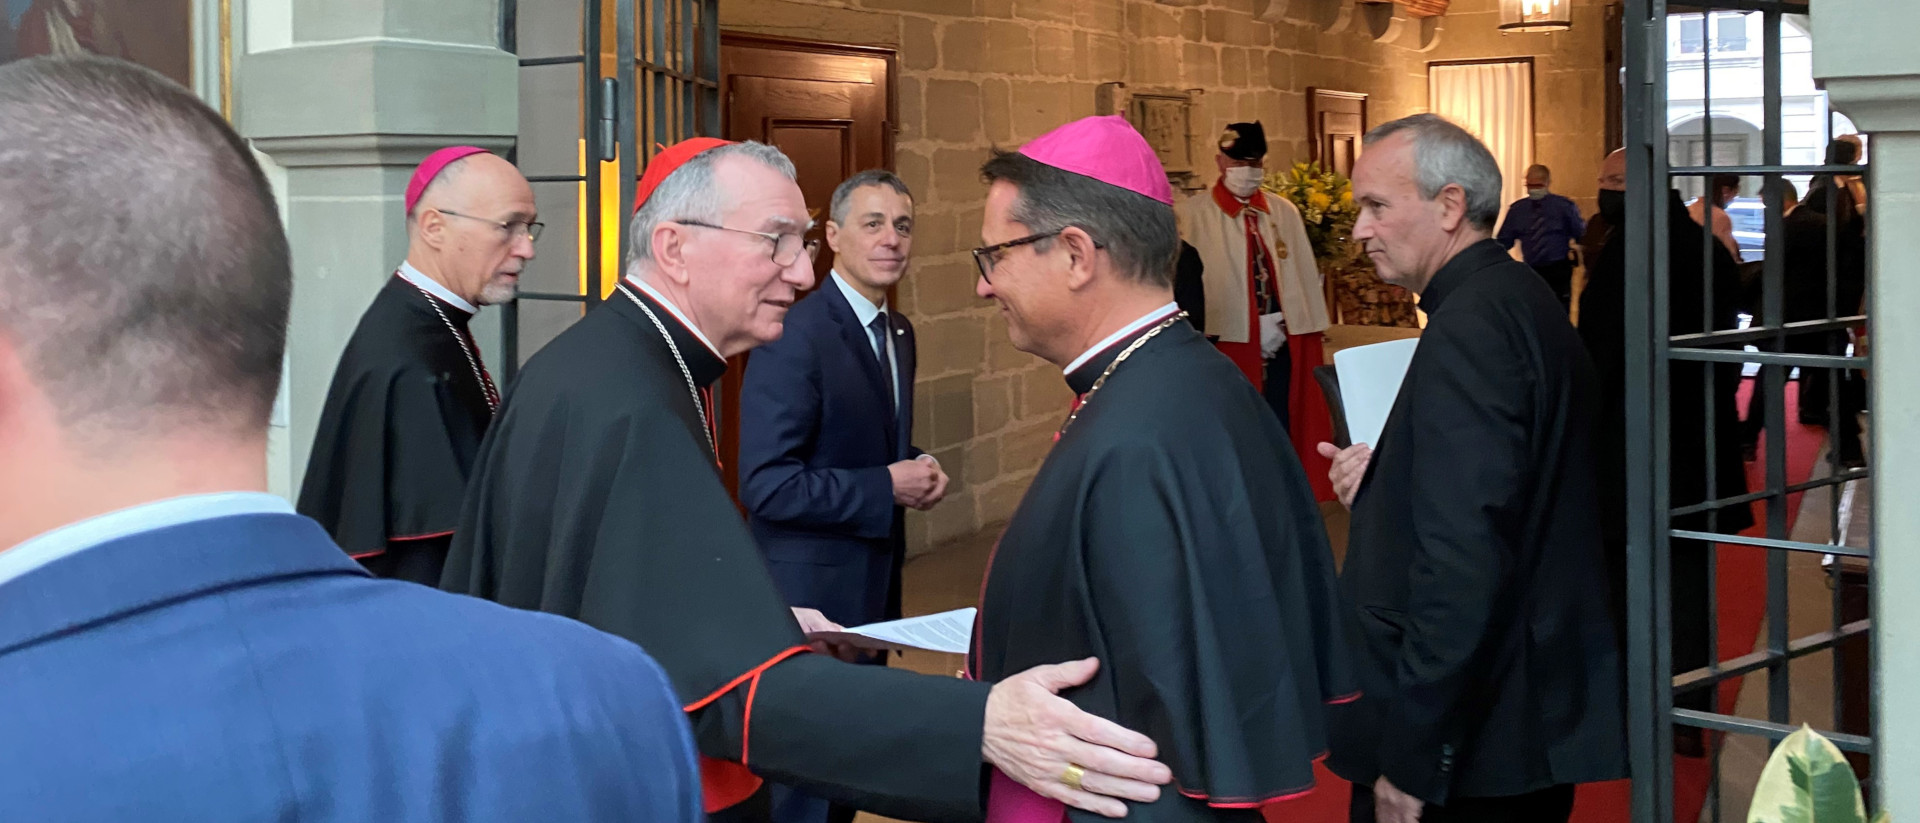 Von links Erzbischof Martin Krebs, Kardinal Pietro Parolin, Bundesrat Ignazio Cassis und Bischof Felix Gmür in Bern.